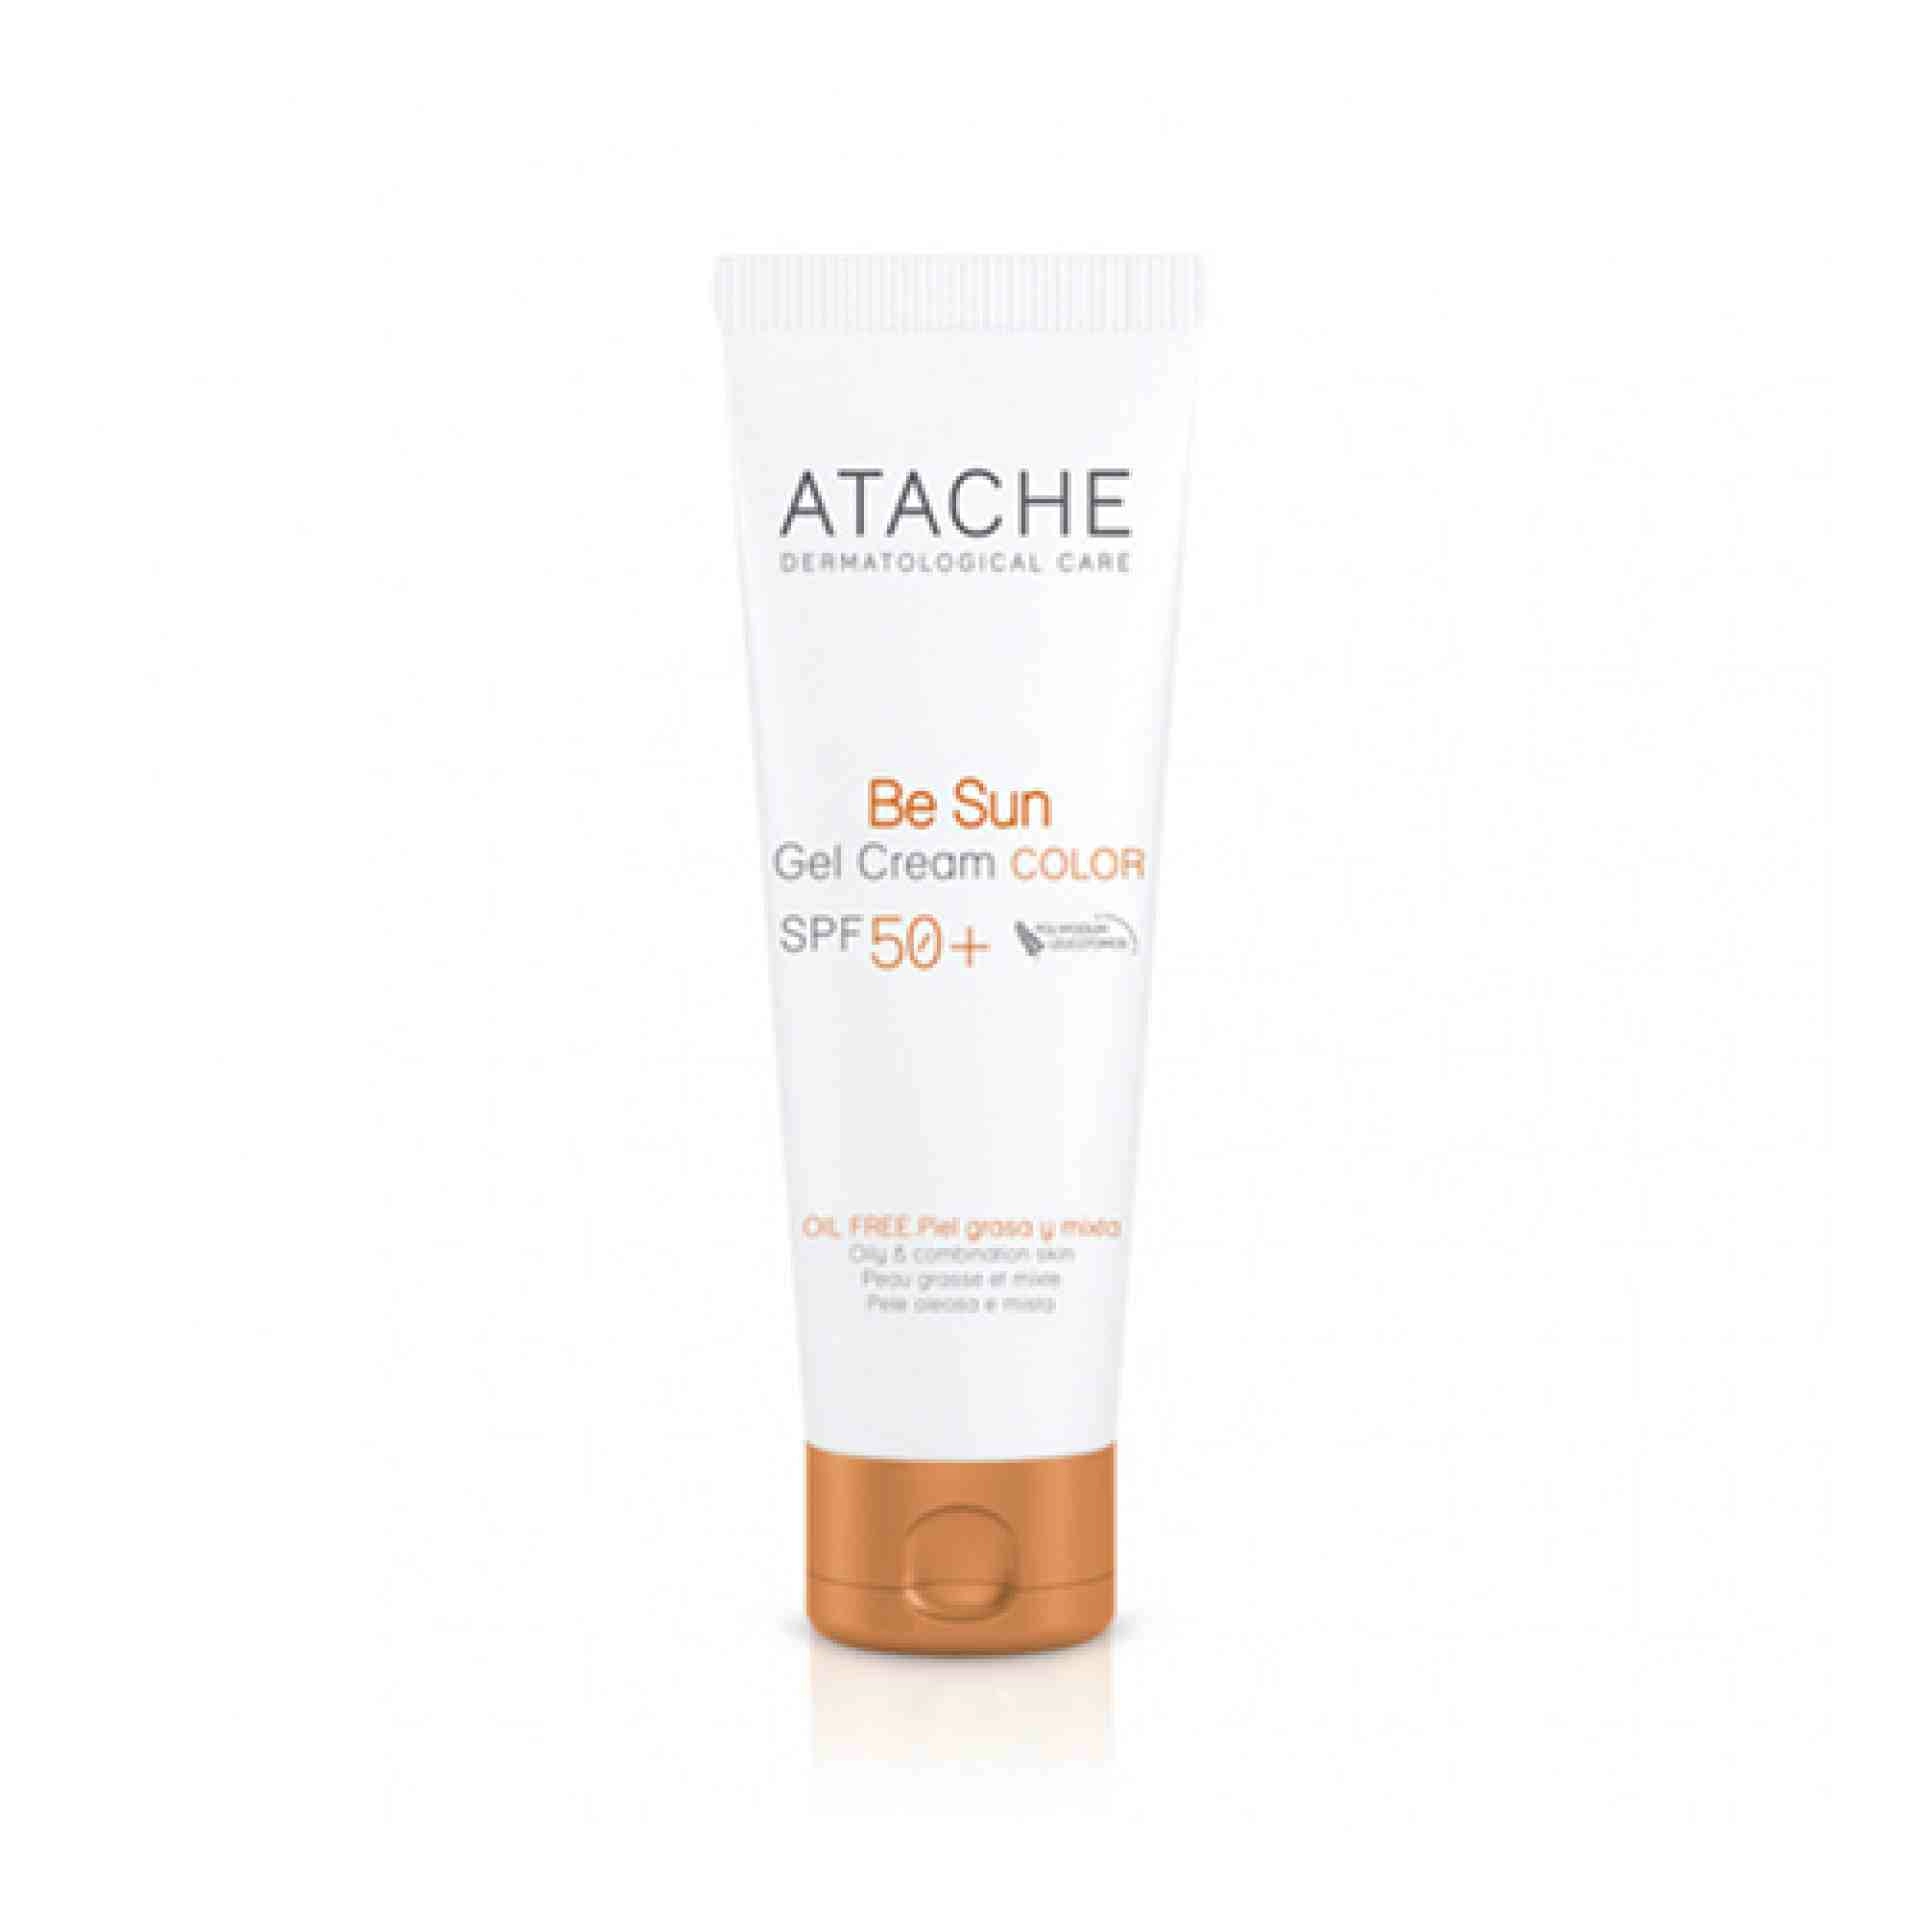 Gel Cream Color SPF 50+ | Protector solar piel grasa y mixta 50ml - Be Sun - Atache ®